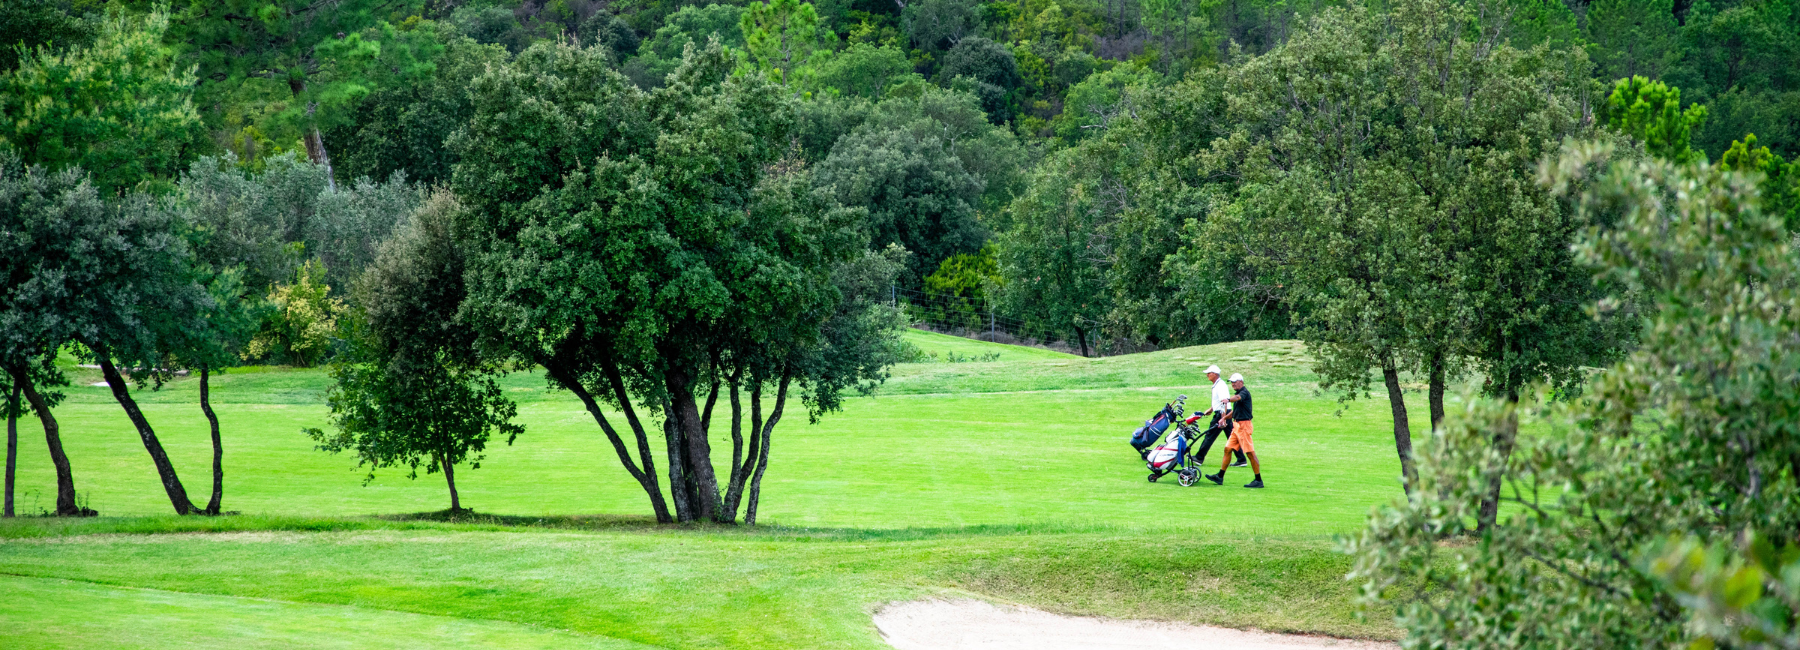 Golfarragementen - verblijf op Domaine du Golf de Roquebrune omringd door de golfbaan met 18 holes